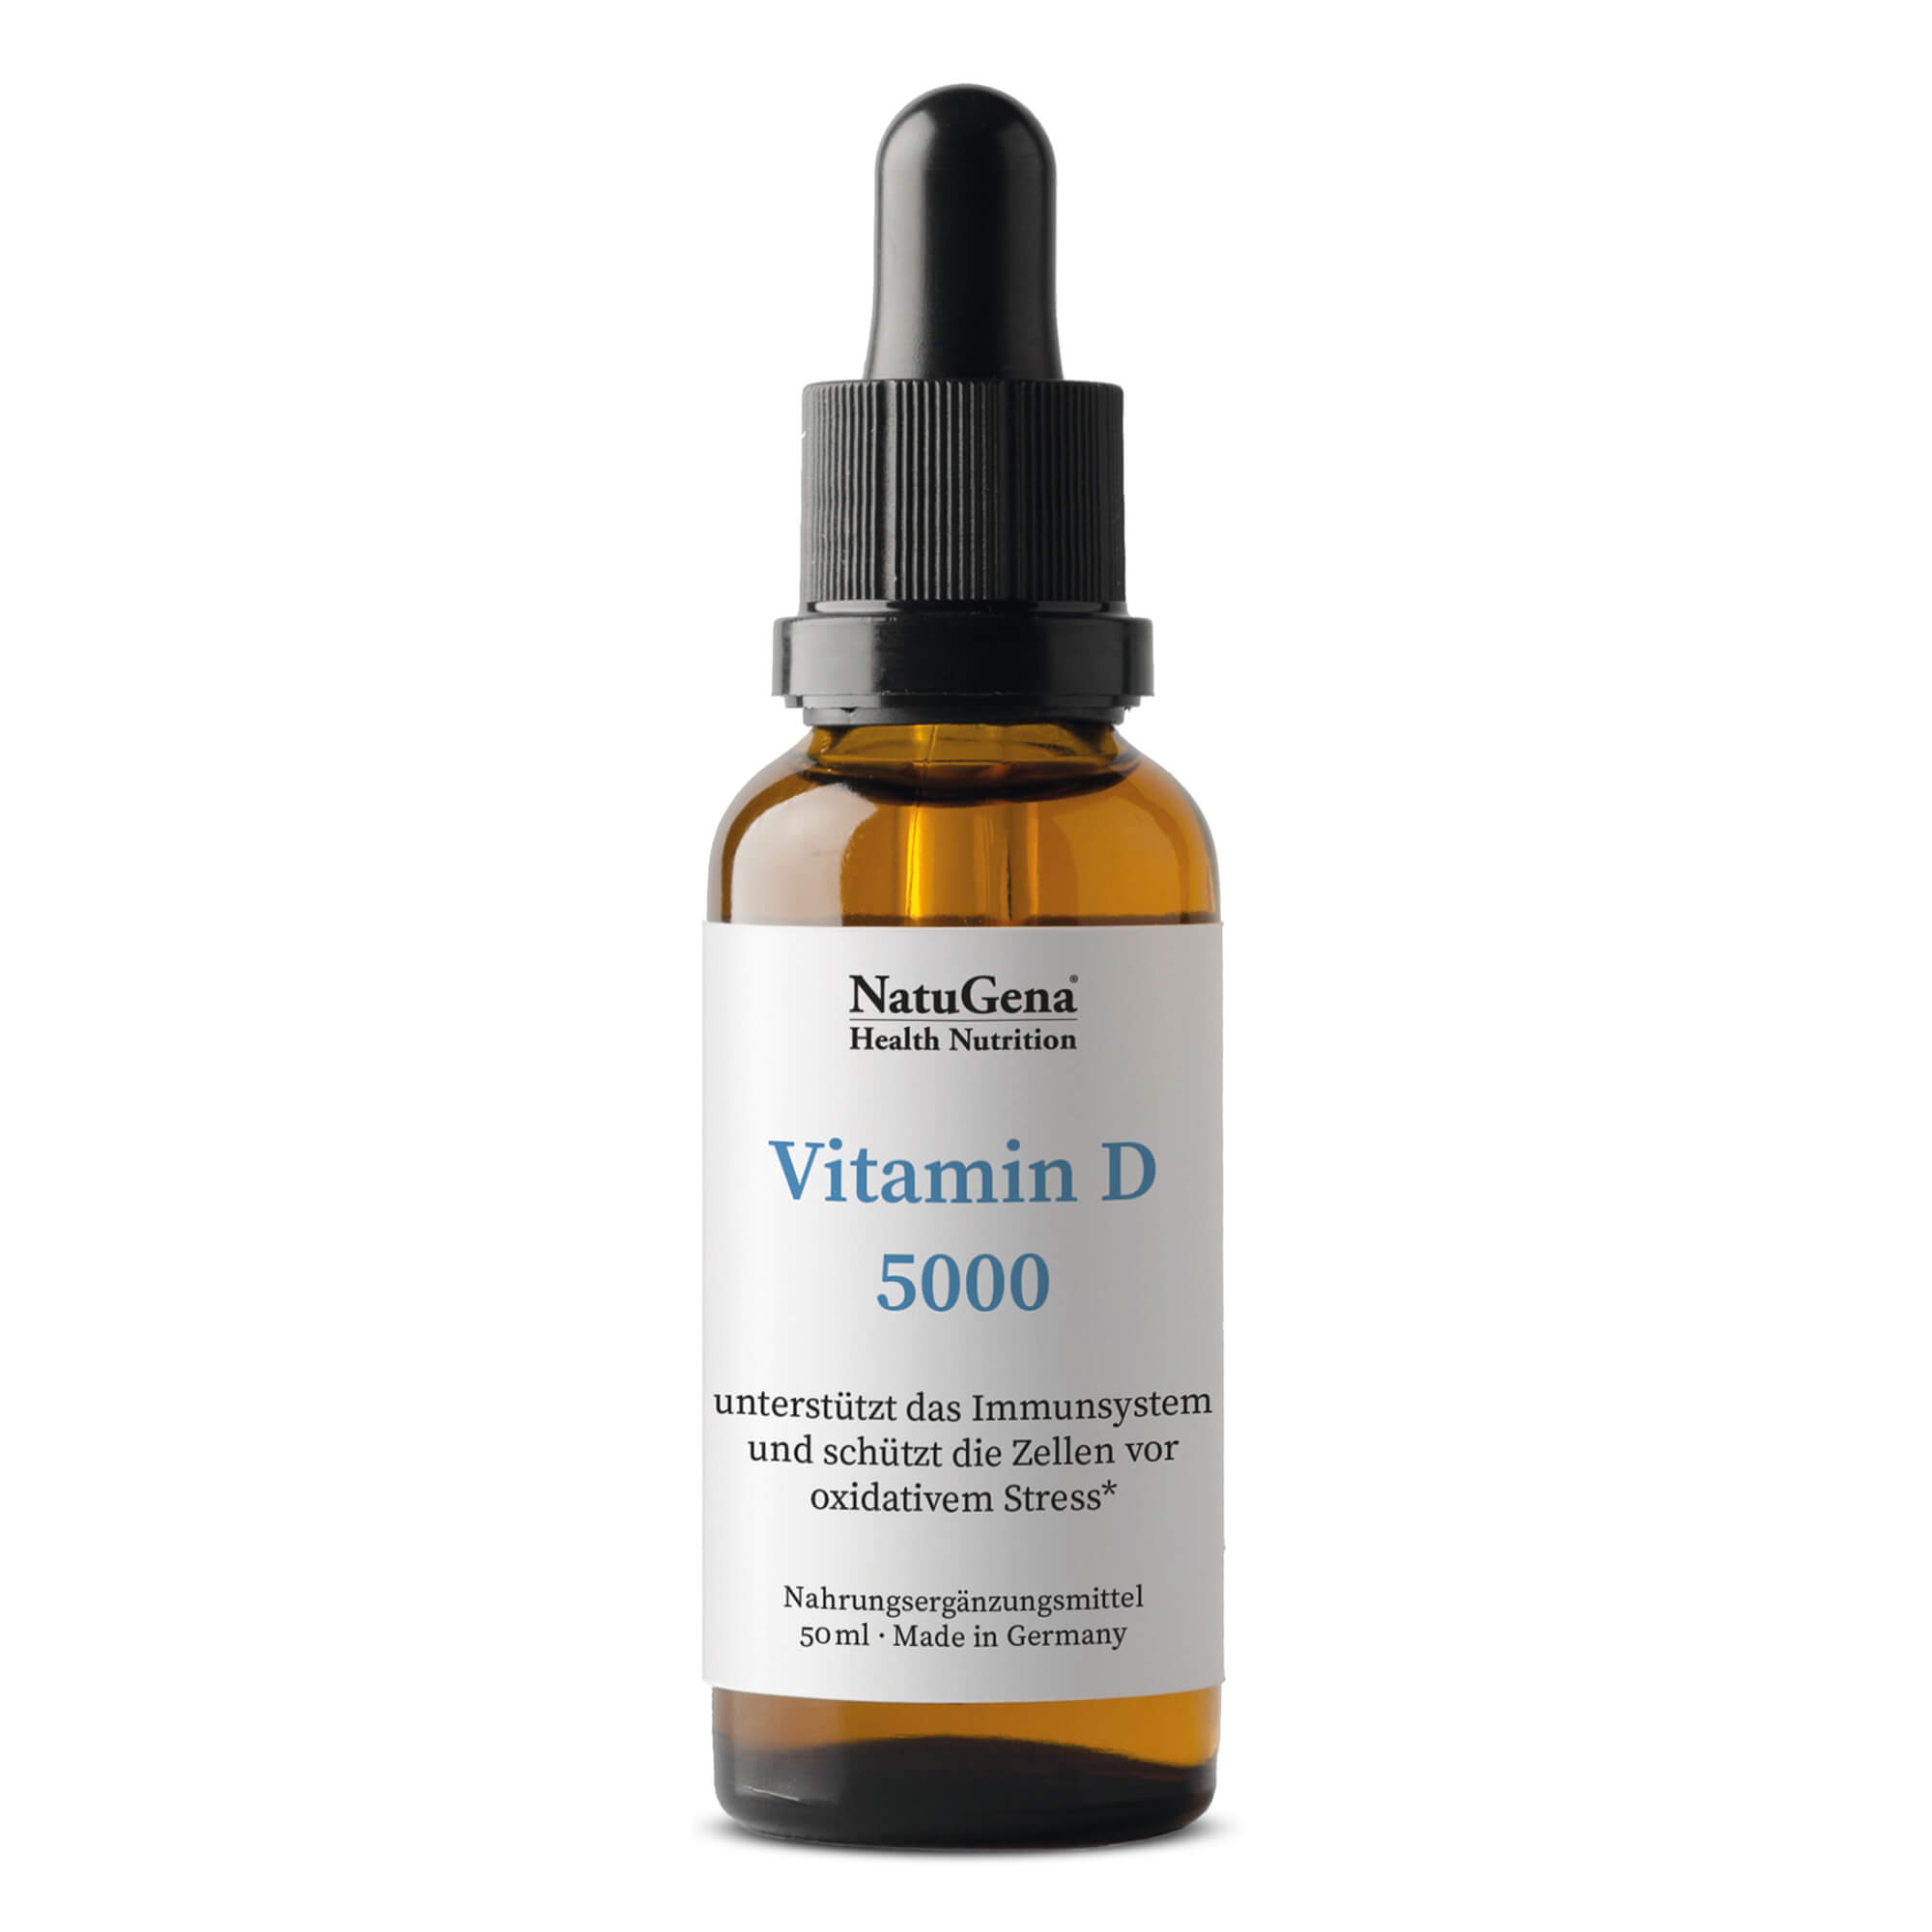 NatuGena Vitamin D 5000 | 50 ml - Hochdosierte Unterstützung für das Immunsystem und Knochengesundheit